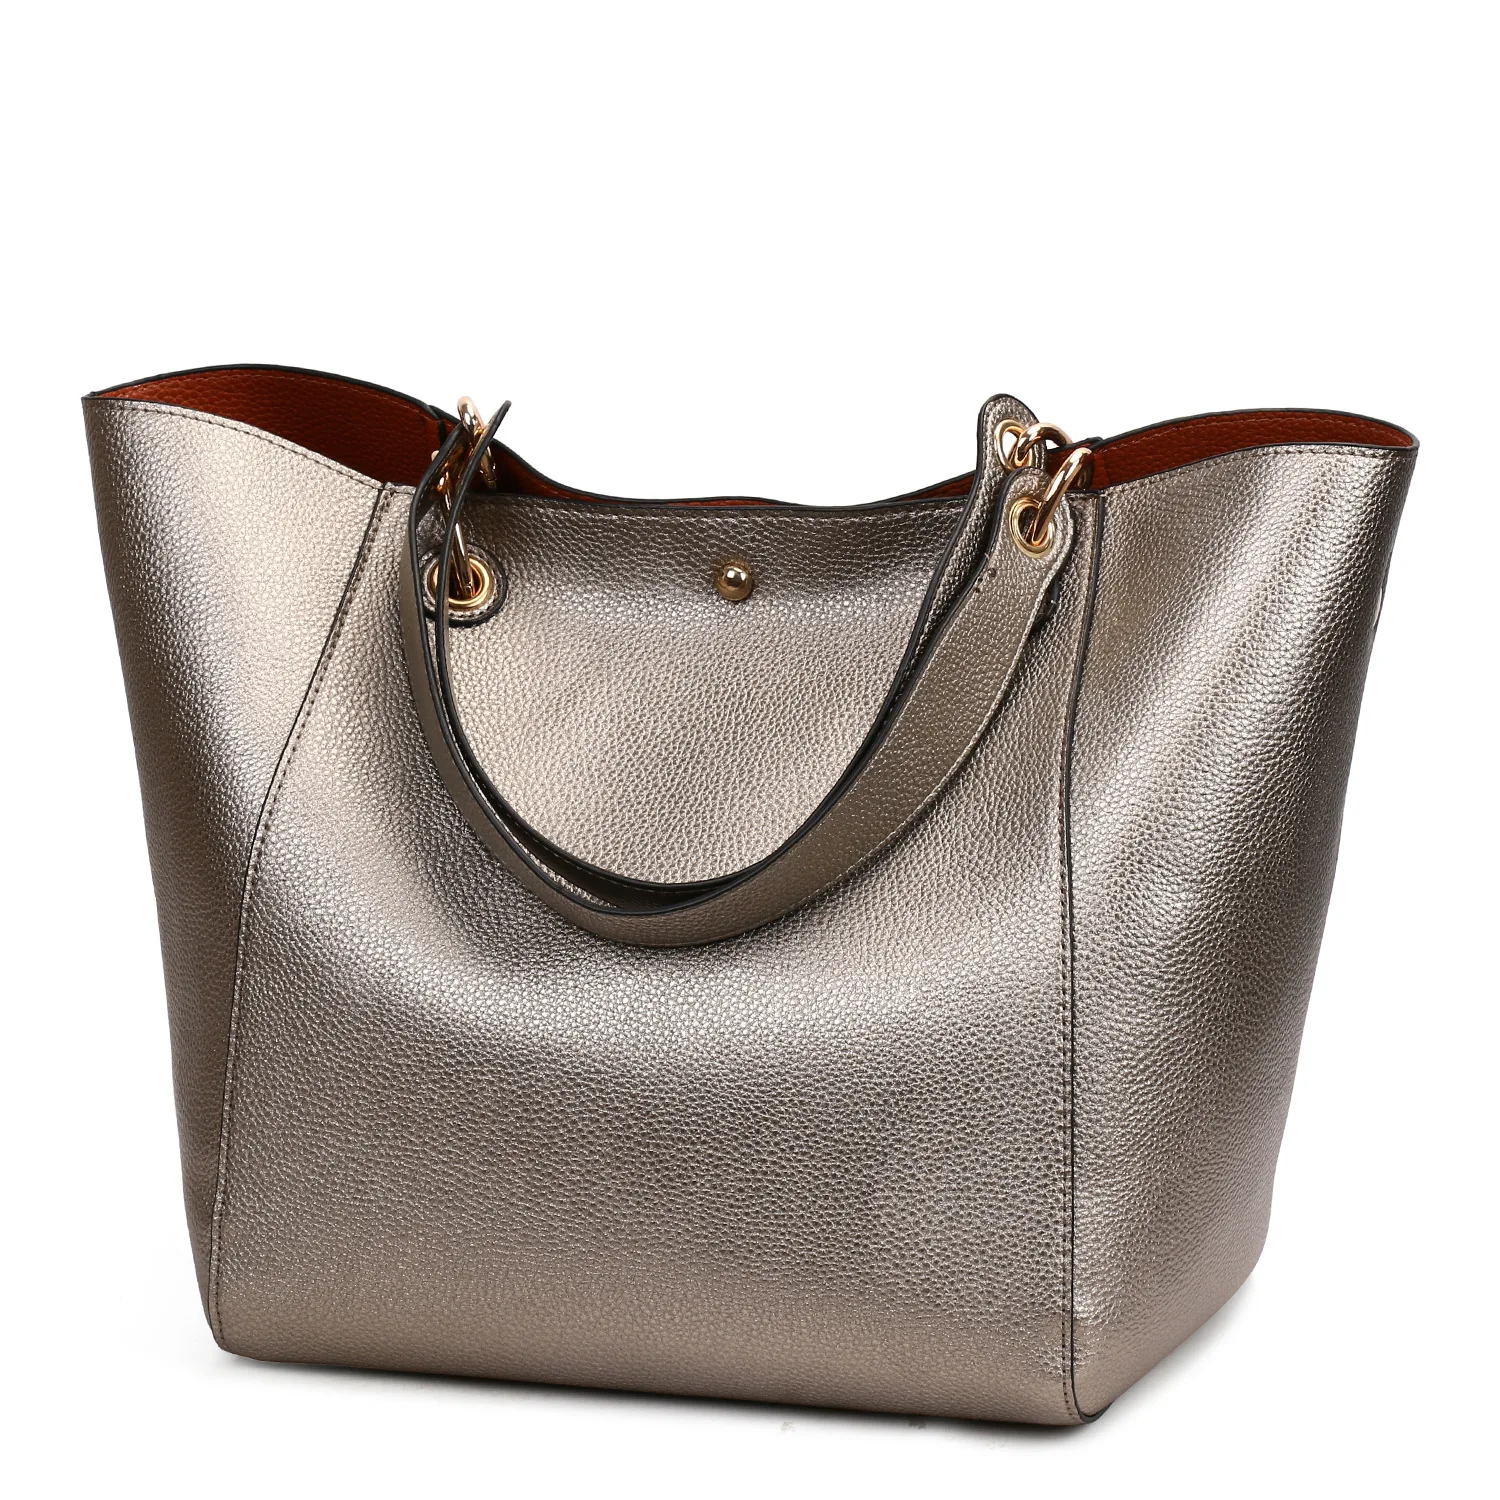 BERAGHINI из искусственной кожи в форме ведерка композитные сумки известный бренд дизайнерские женские сумки высокого качества сумка через плечо